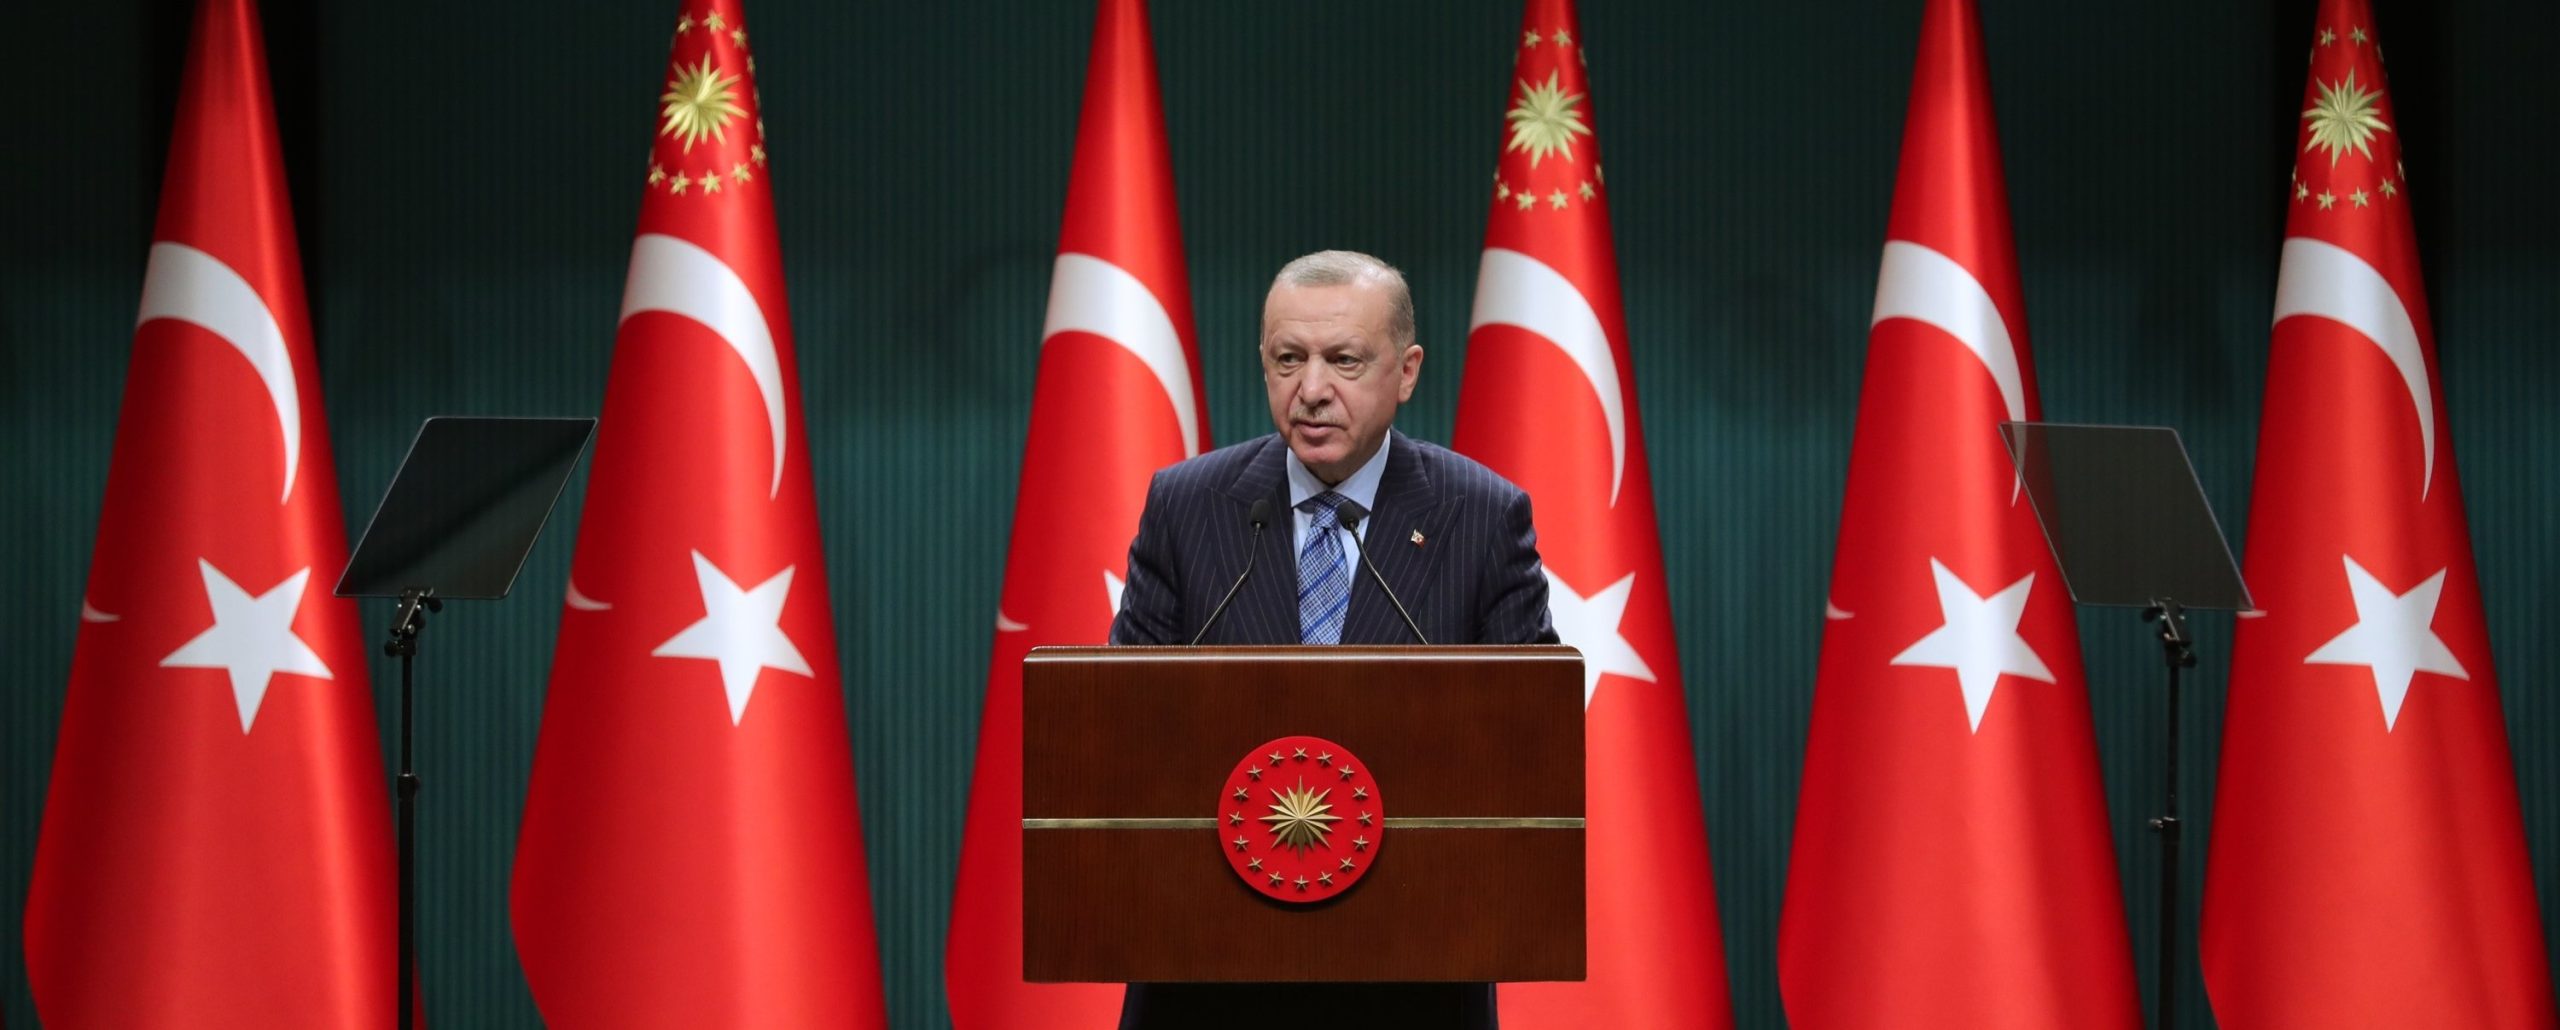 Ο Ρ.Τ.Ερντογάν ανοίγει τα σύνορα της Τουρκίας προς Ελλάδα στους Αφγανούς: «Δεν θα γίνουμε εμείς αποθήκη ανθρώπων»!